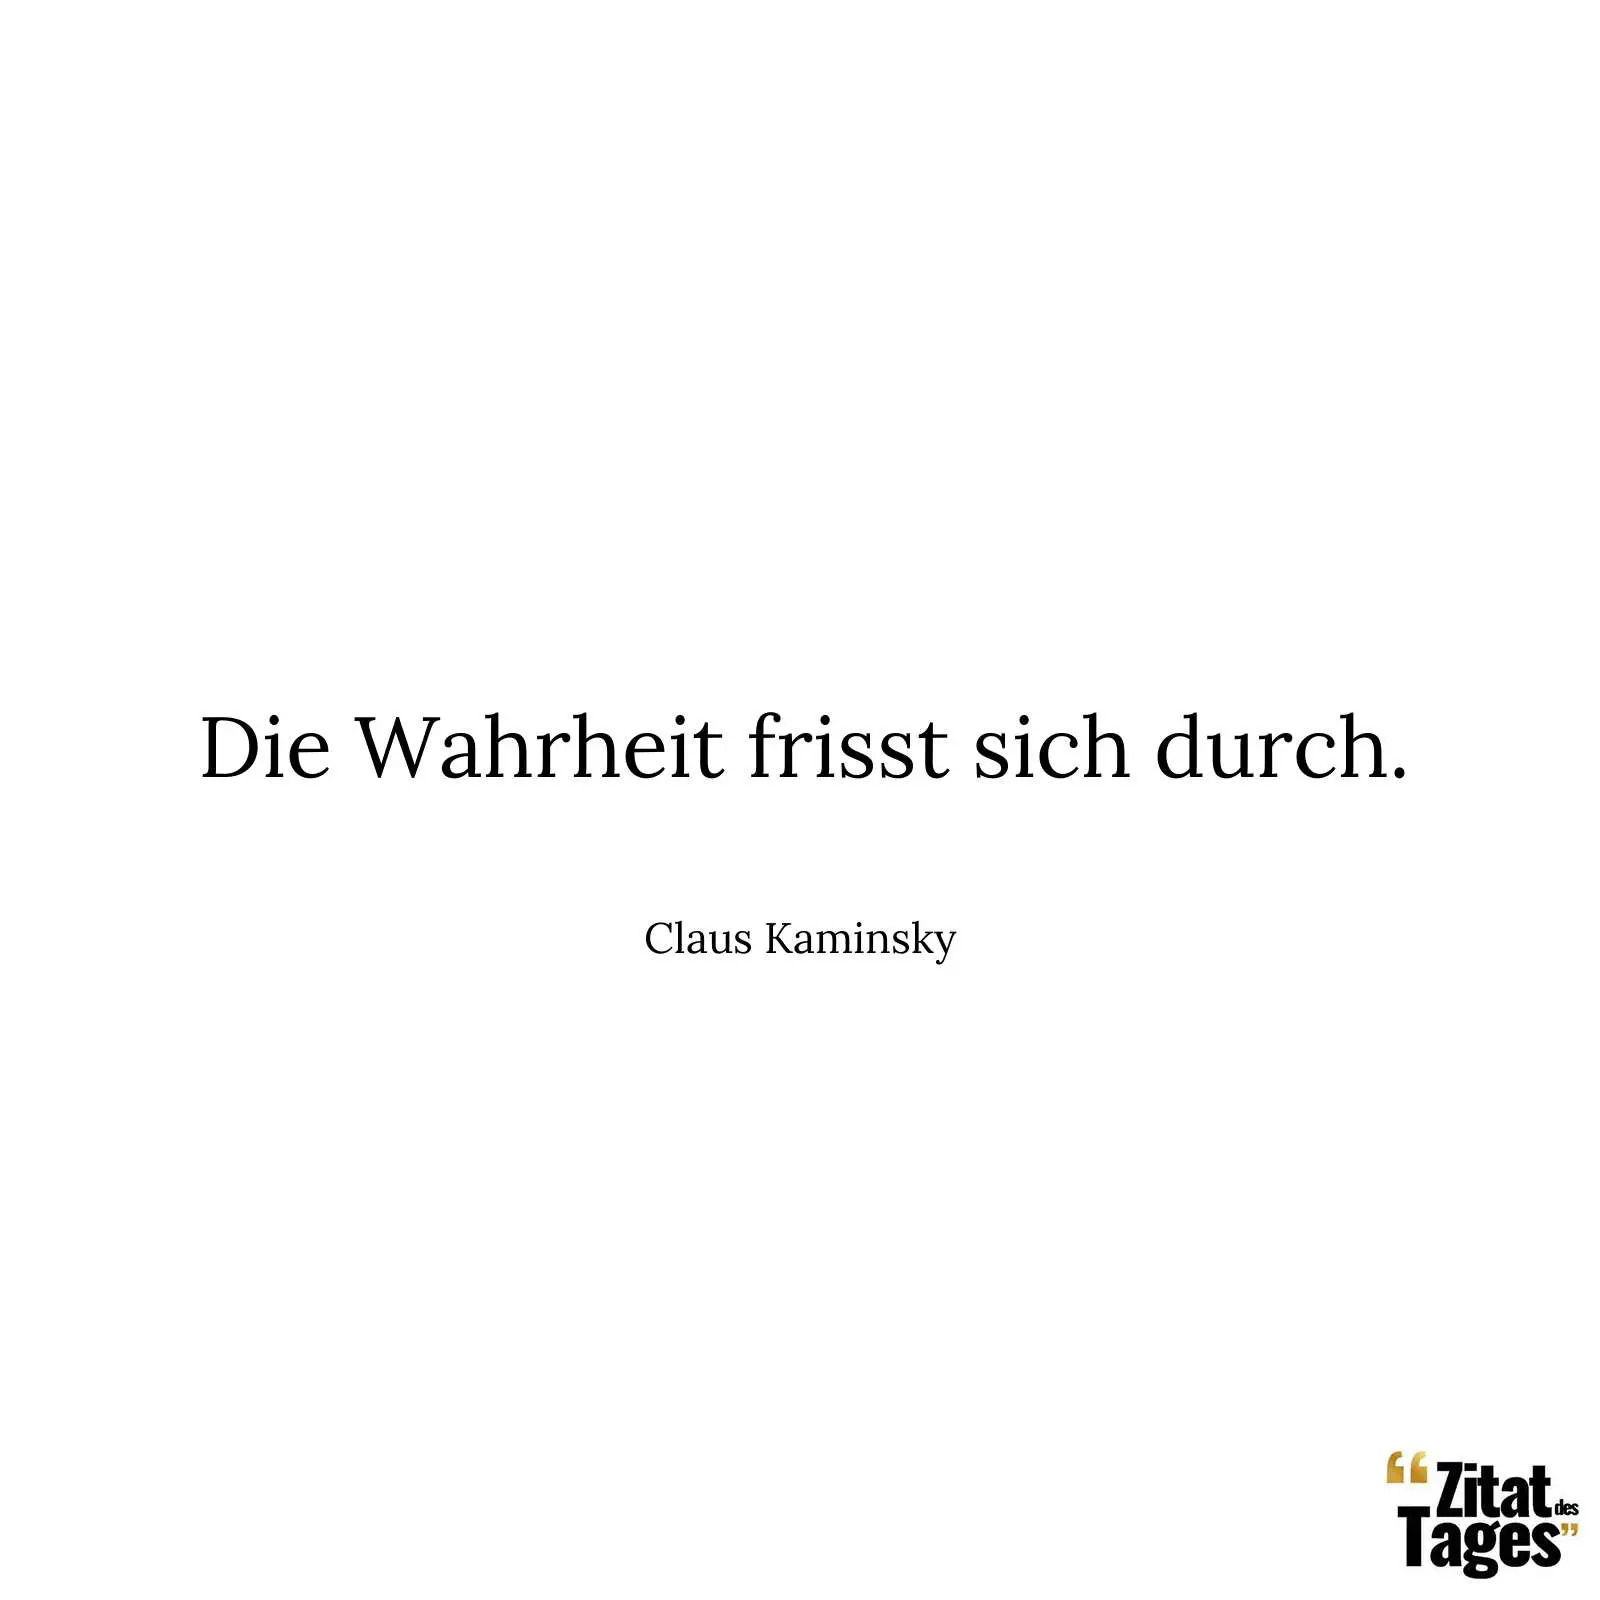 Die Wahrheit frisst sich durch. - Claus Kaminsky